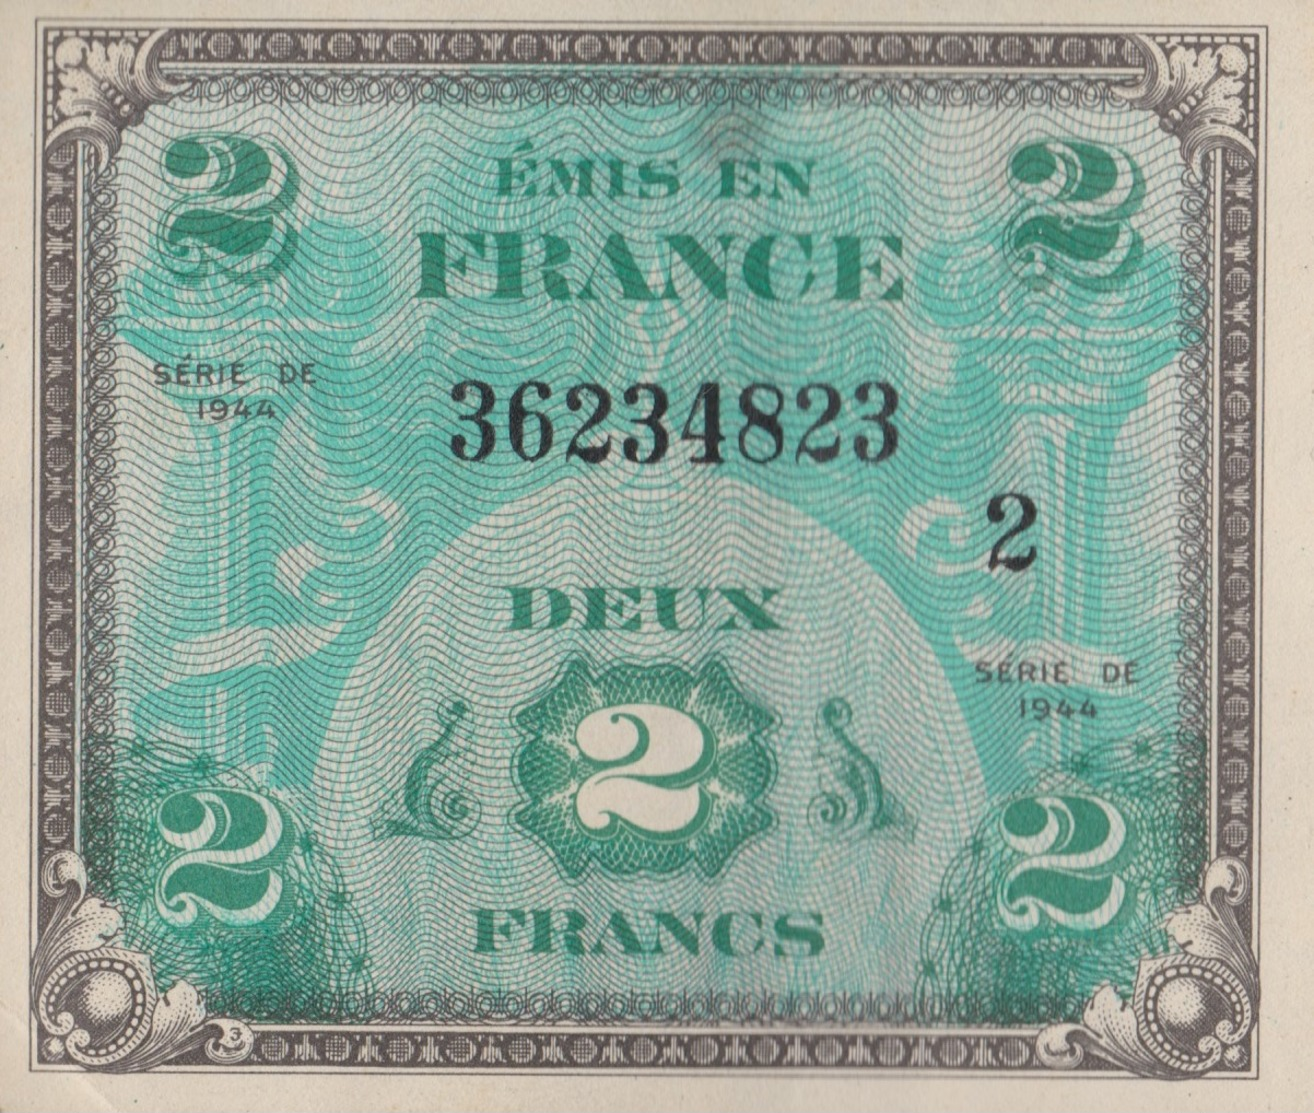 France / 2 Francs / 1944 / P-114(b) / AUNC - Zonder Classificatie